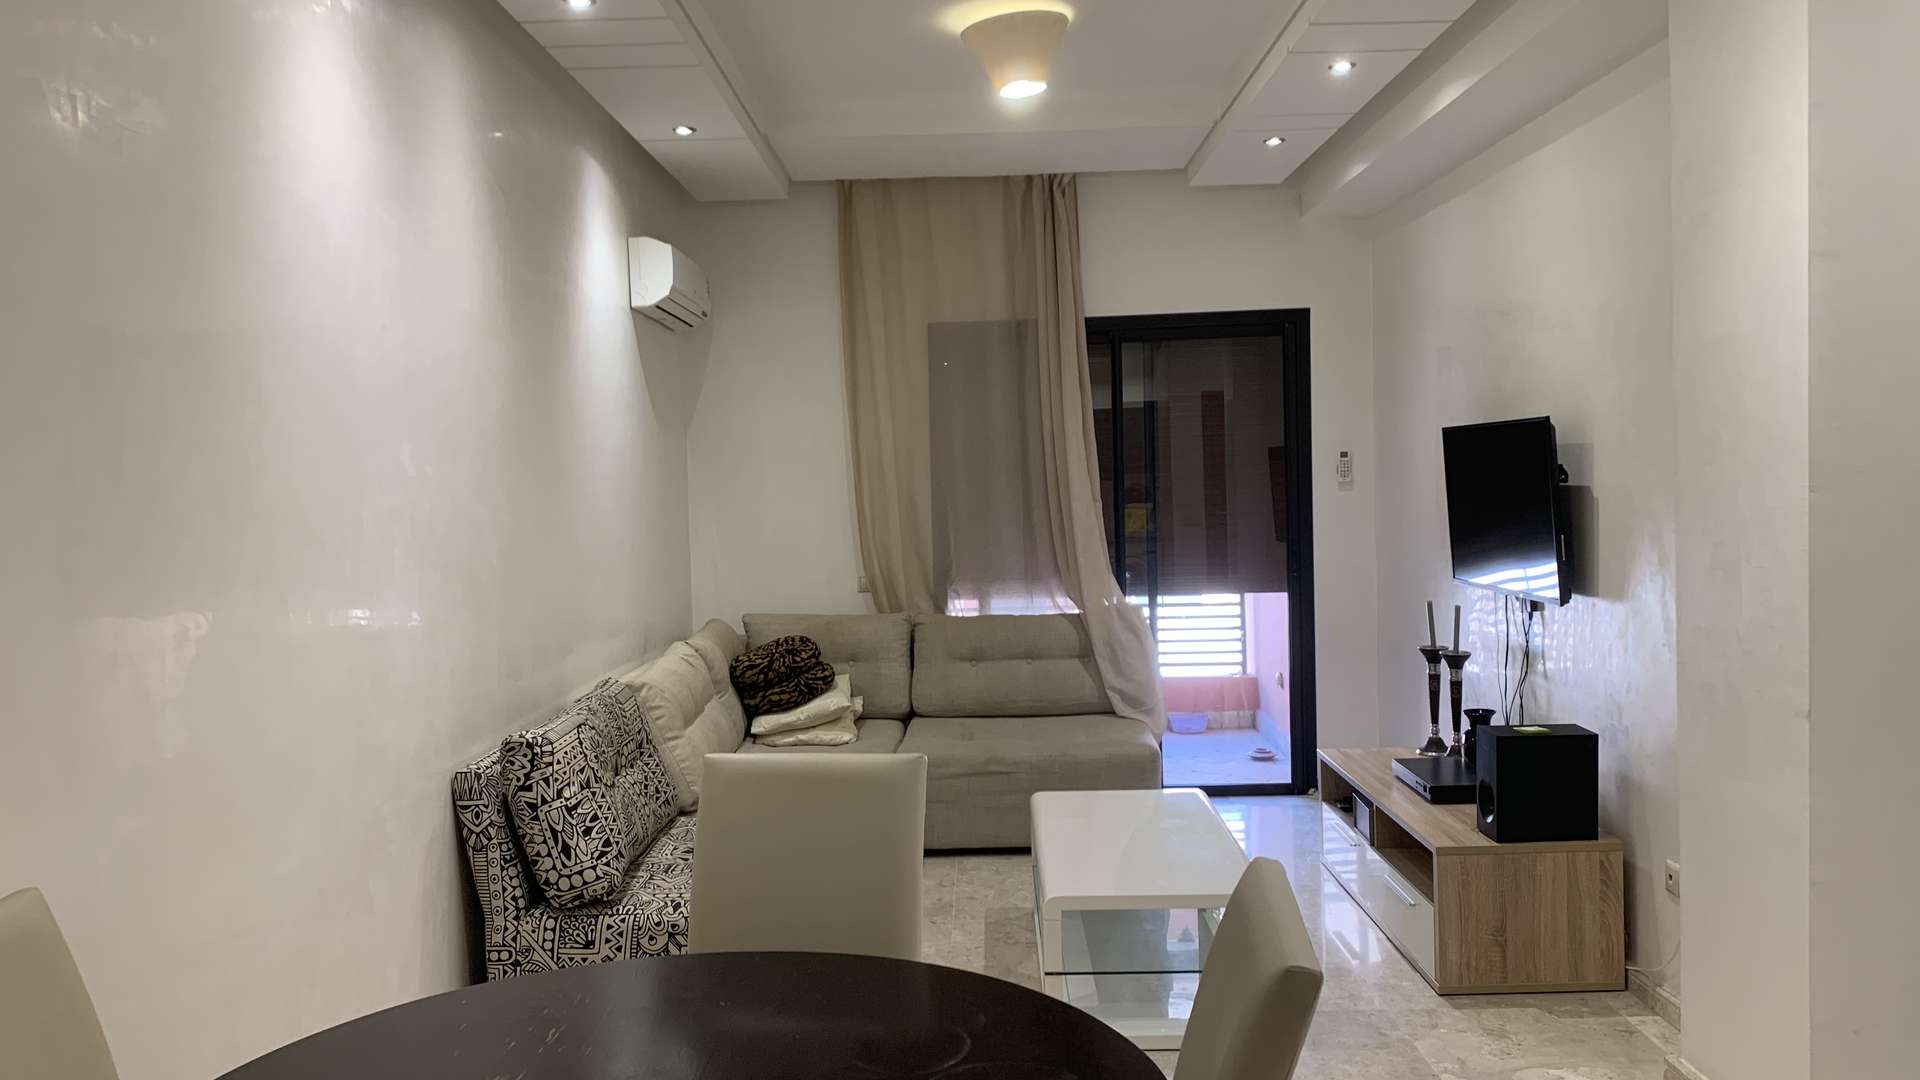 Location longue durée ,Appartement,Louez cet appartement à Guéliz. Surface totale 50.0 m². Bien meublé,Marrakech,Guéliz